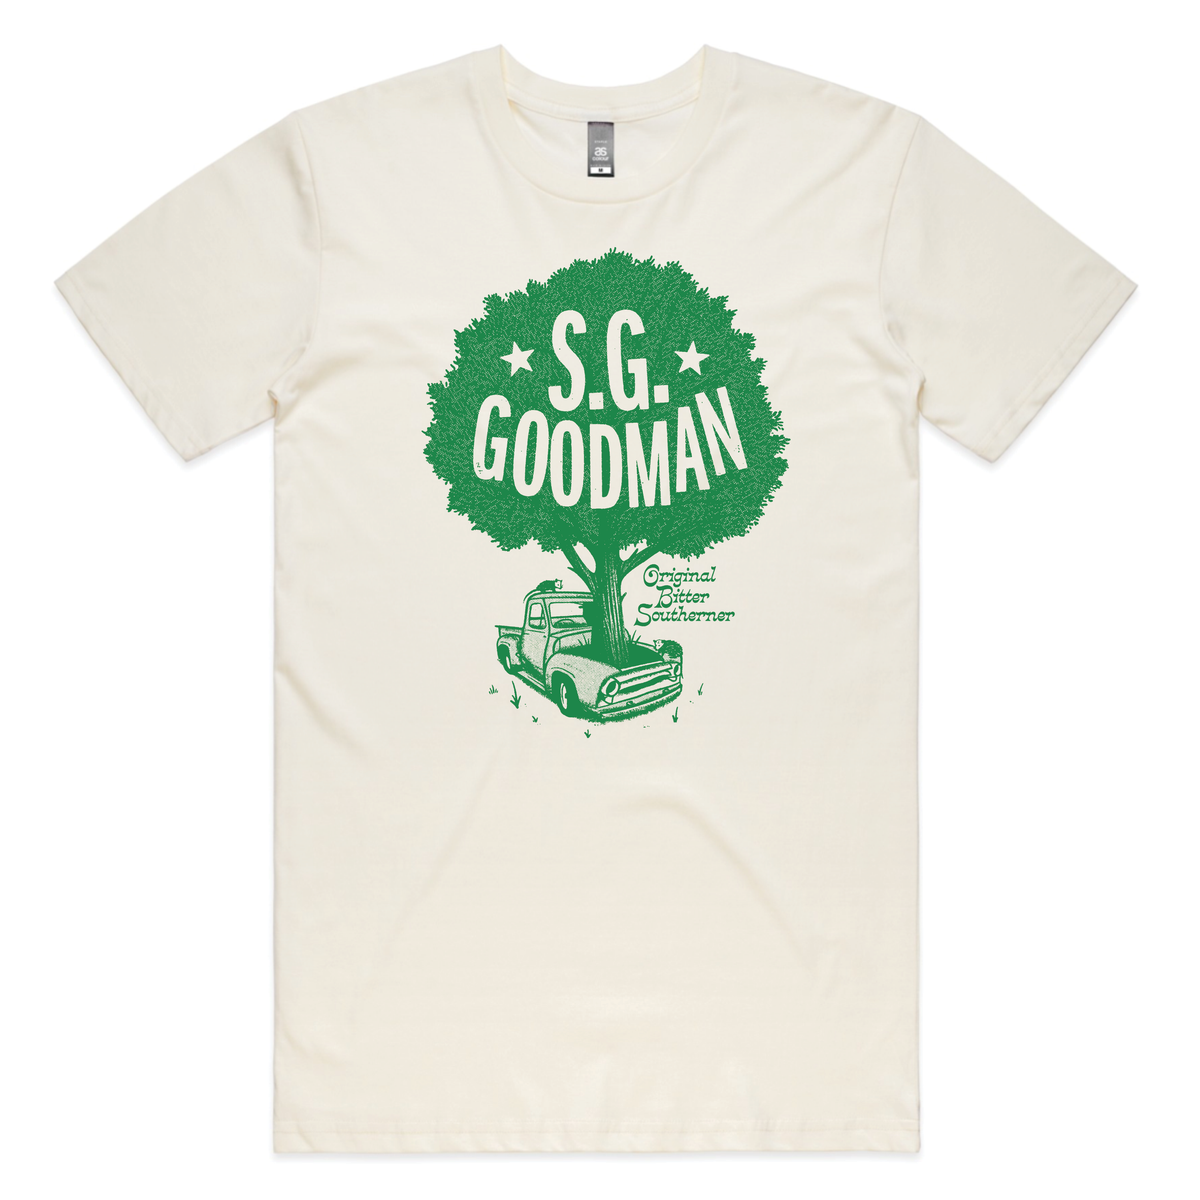 S.G. Goodman, Original Bitter Southerner T-Shirt